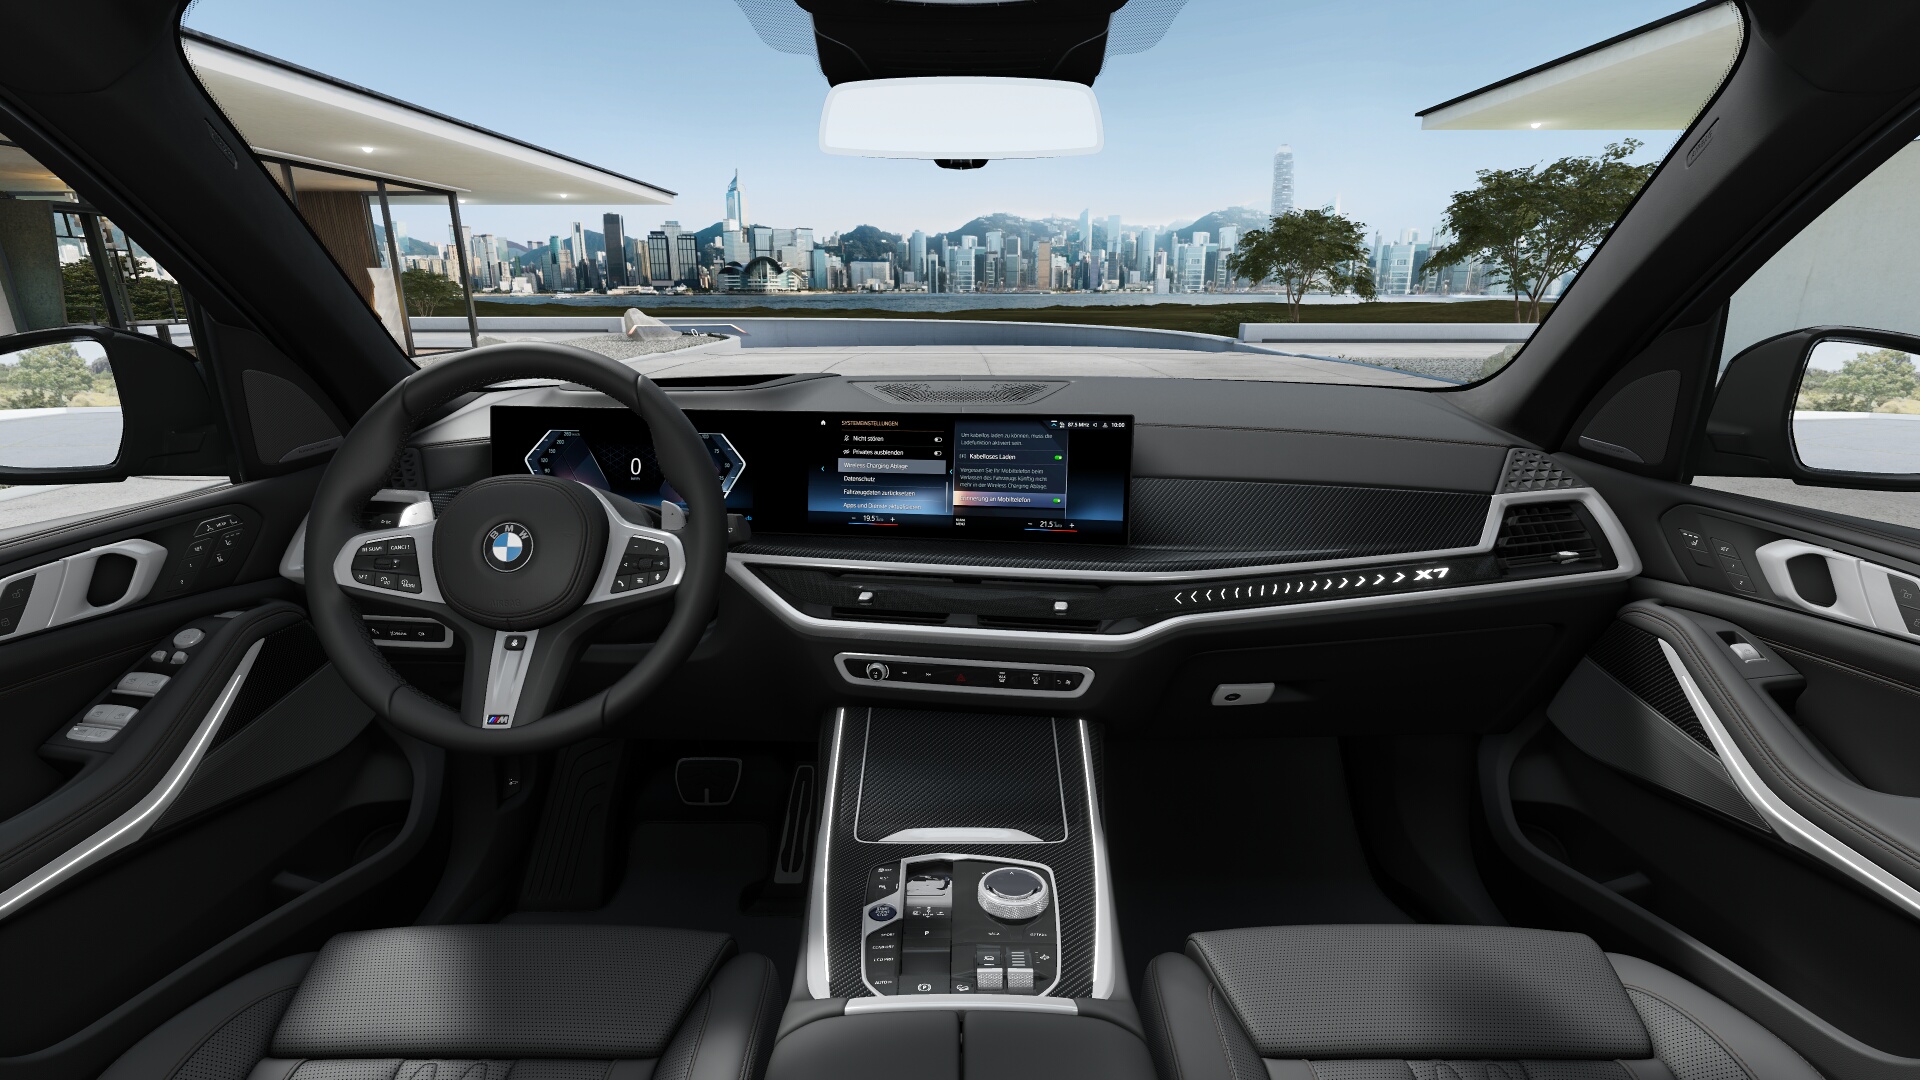 BMW X7 40d xDrive Msport | FACELIFT | SKLADEM | nové české auto ihned k předání | nejoblíbenější velké SUV s naftovým motorem 340 koní | černá Sapphire s černou kůží | super výbava | skvělá cena | nákup online | AUTOiBUY.com